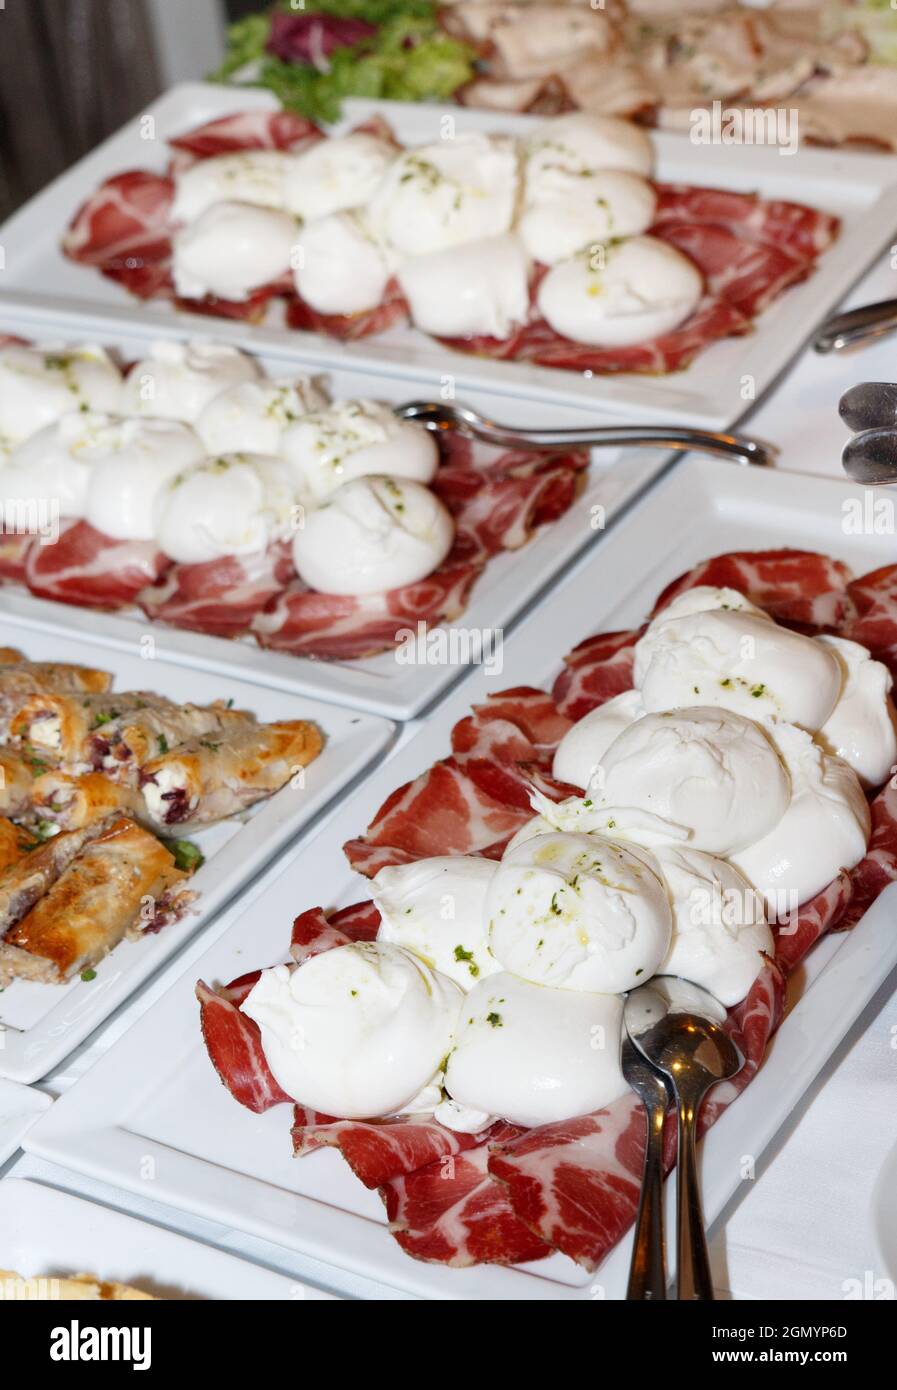 Traditionelle Apuläus-Mozzarella und Antipasti-Snacks während einer italienischen Hochzeit oder Feier, über dem Blick. Festlicher Empfang mit verschiedenen nationalen Gerichten. Stockfoto